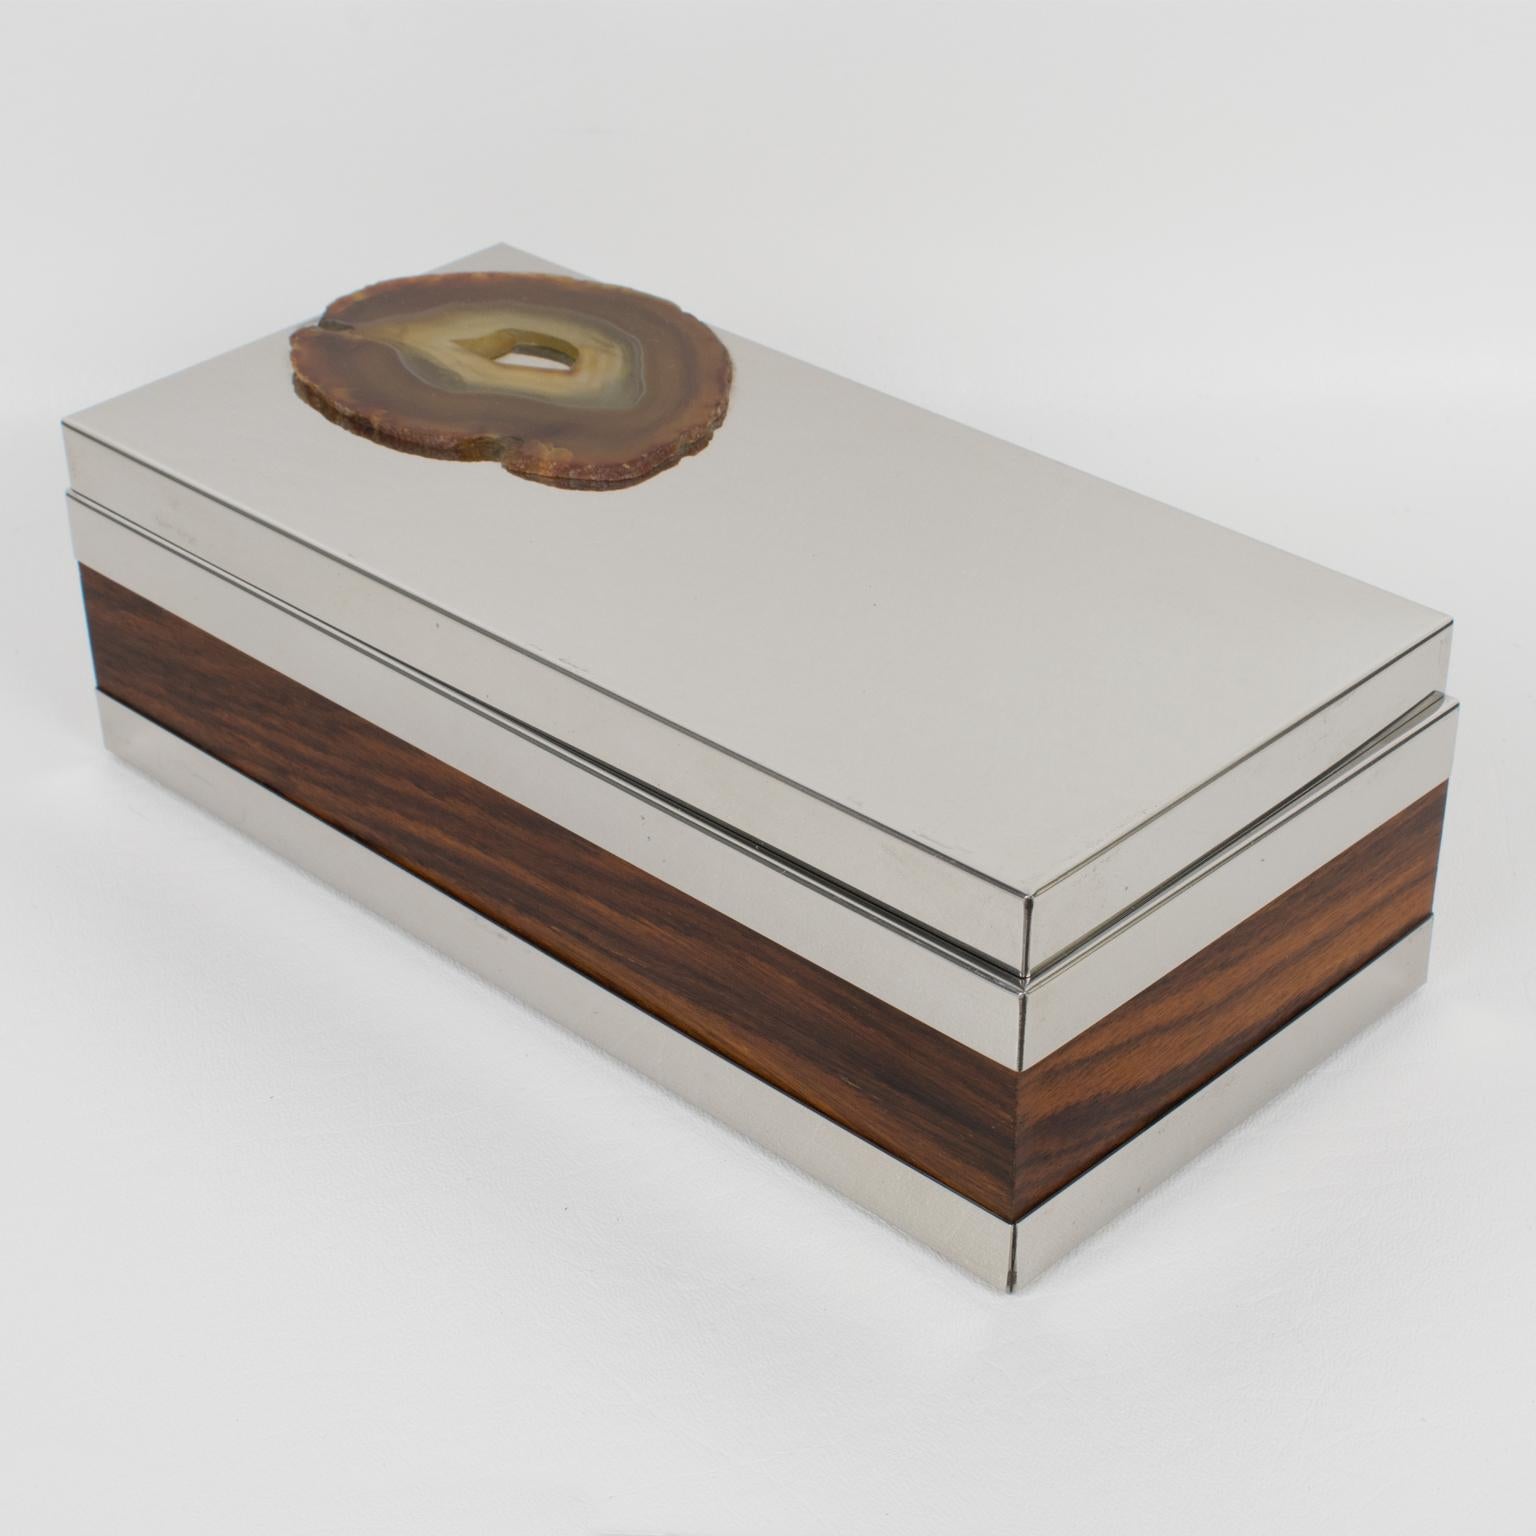 Cette jolie boîte à couvercle en métal argenté de style moderniste italien des années 1980 présente un design qui rappelle l'élégante production de Gabriella Crespi. La forme rectangulaire minimaliste est dotée de panneaux latéraux en bois de